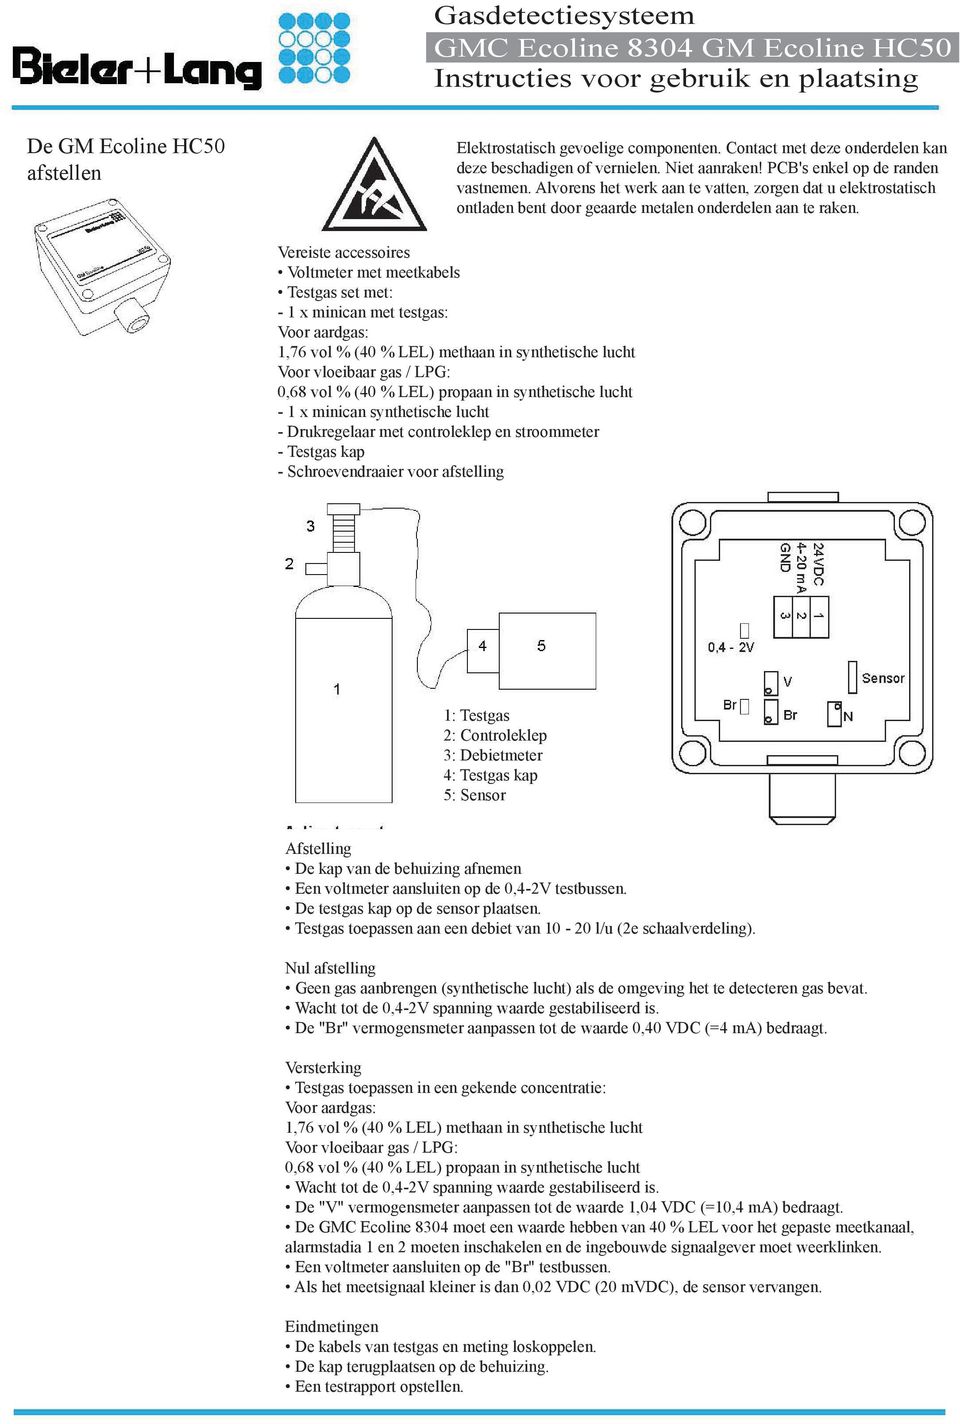 Vereiste accessoires Voltmeter met meetkabels Testgas set met: - 1 x minican met testgas: Voor aardgas: 1,76 vol % (40 % LEL) methaan in synthetische lucht Voor vloeibaar gas / LPG: 0,68 vol % (40 %